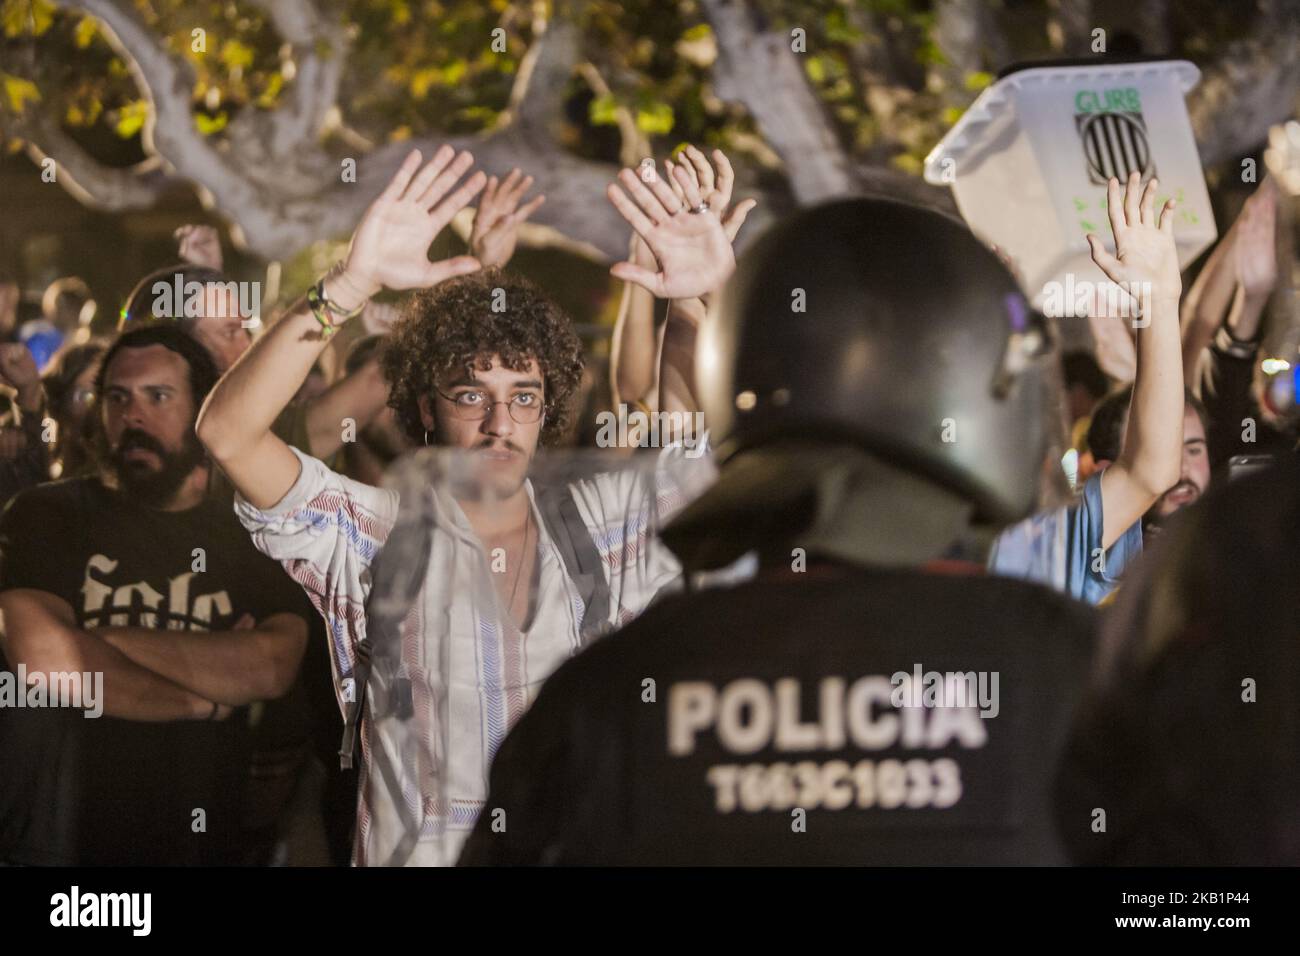 Près de Barcelone – La police met fin à une fête de 40 heures - L'essentiel